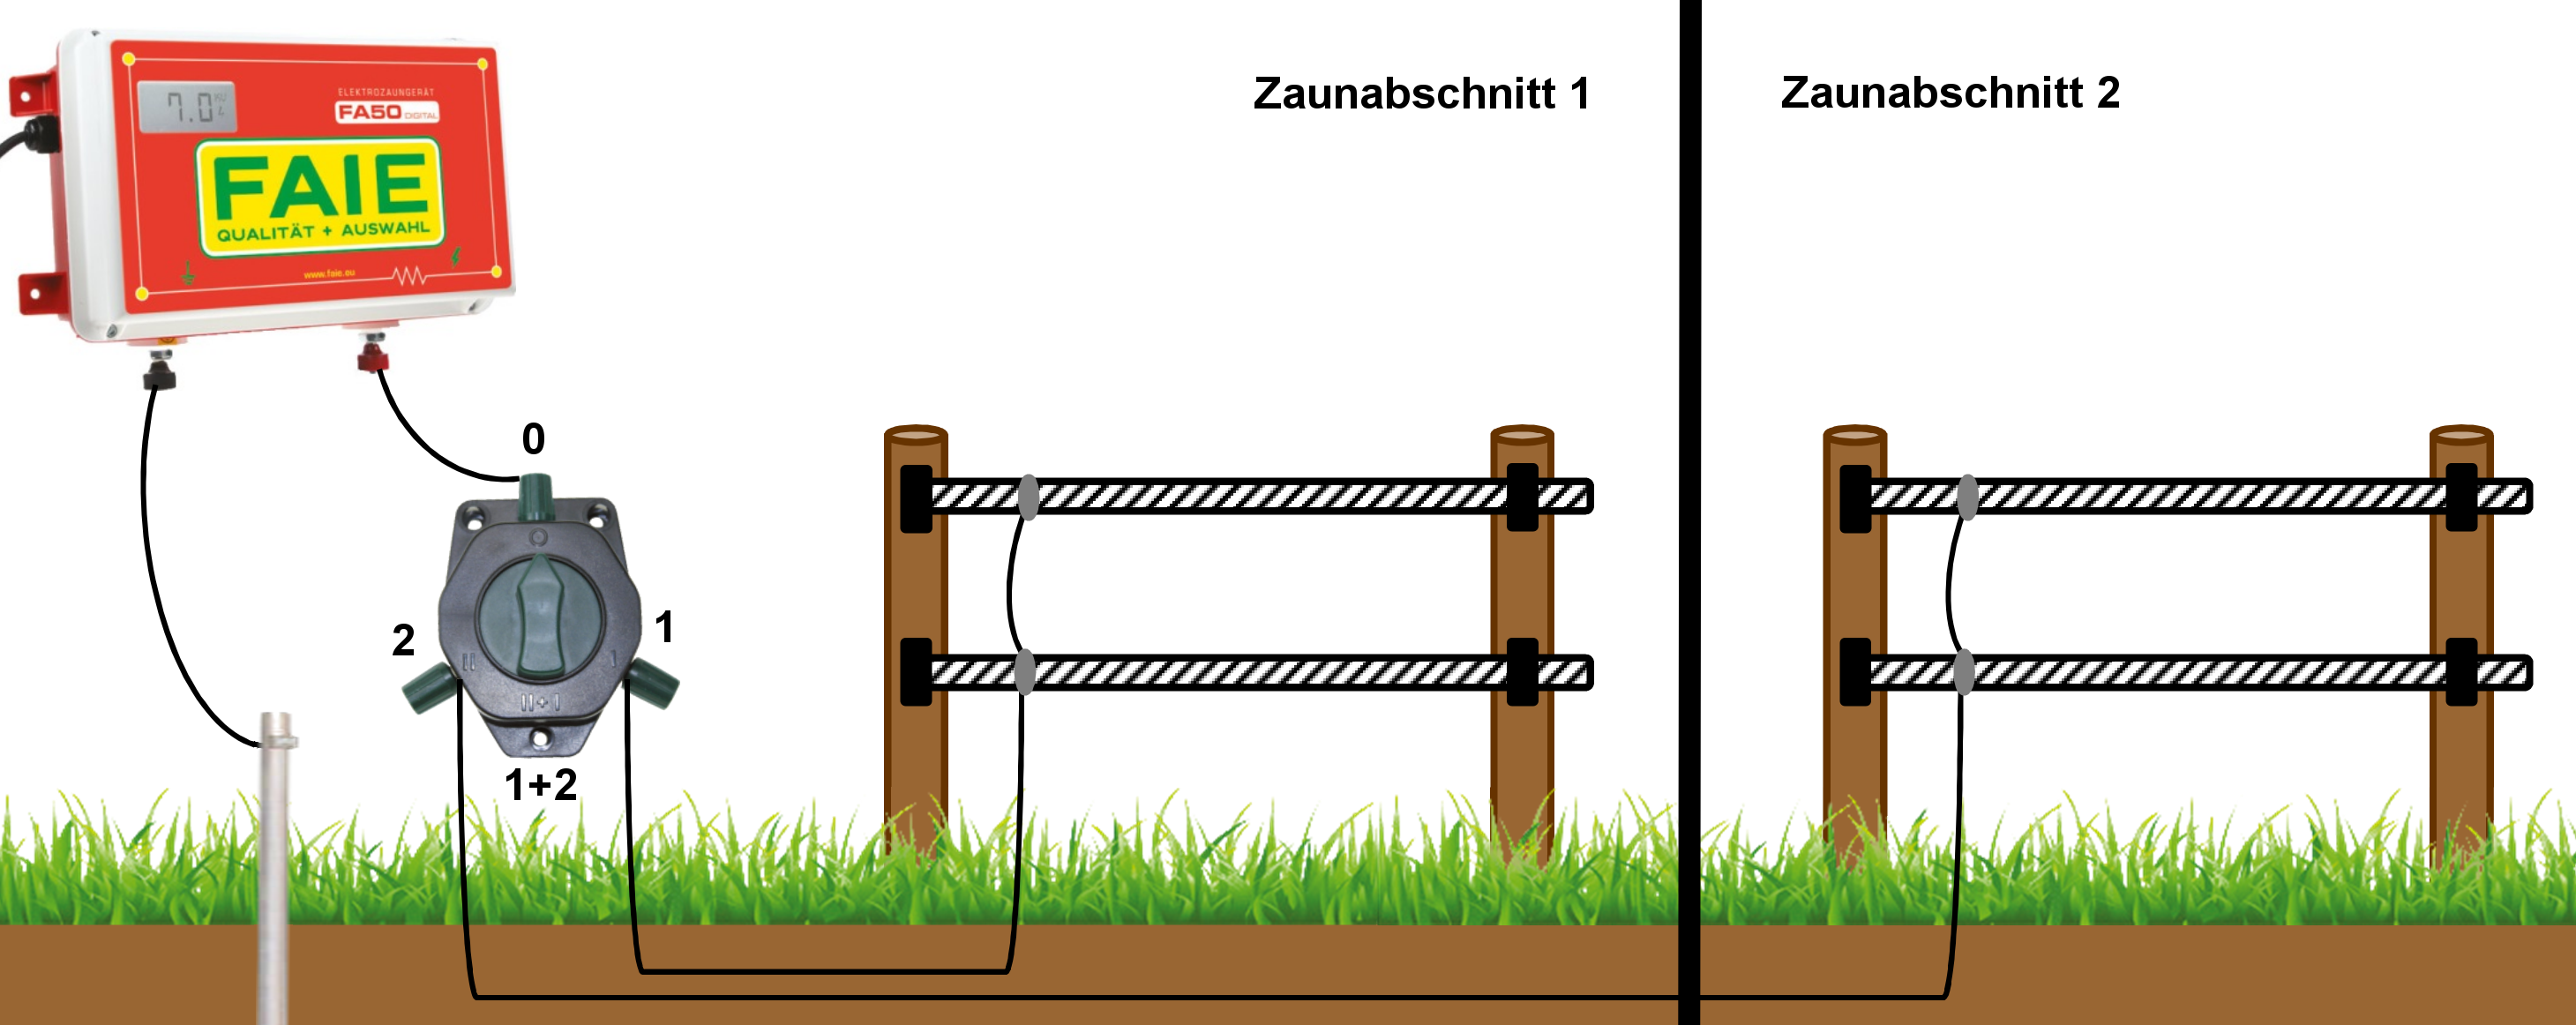 Zaunschalter-Grafik